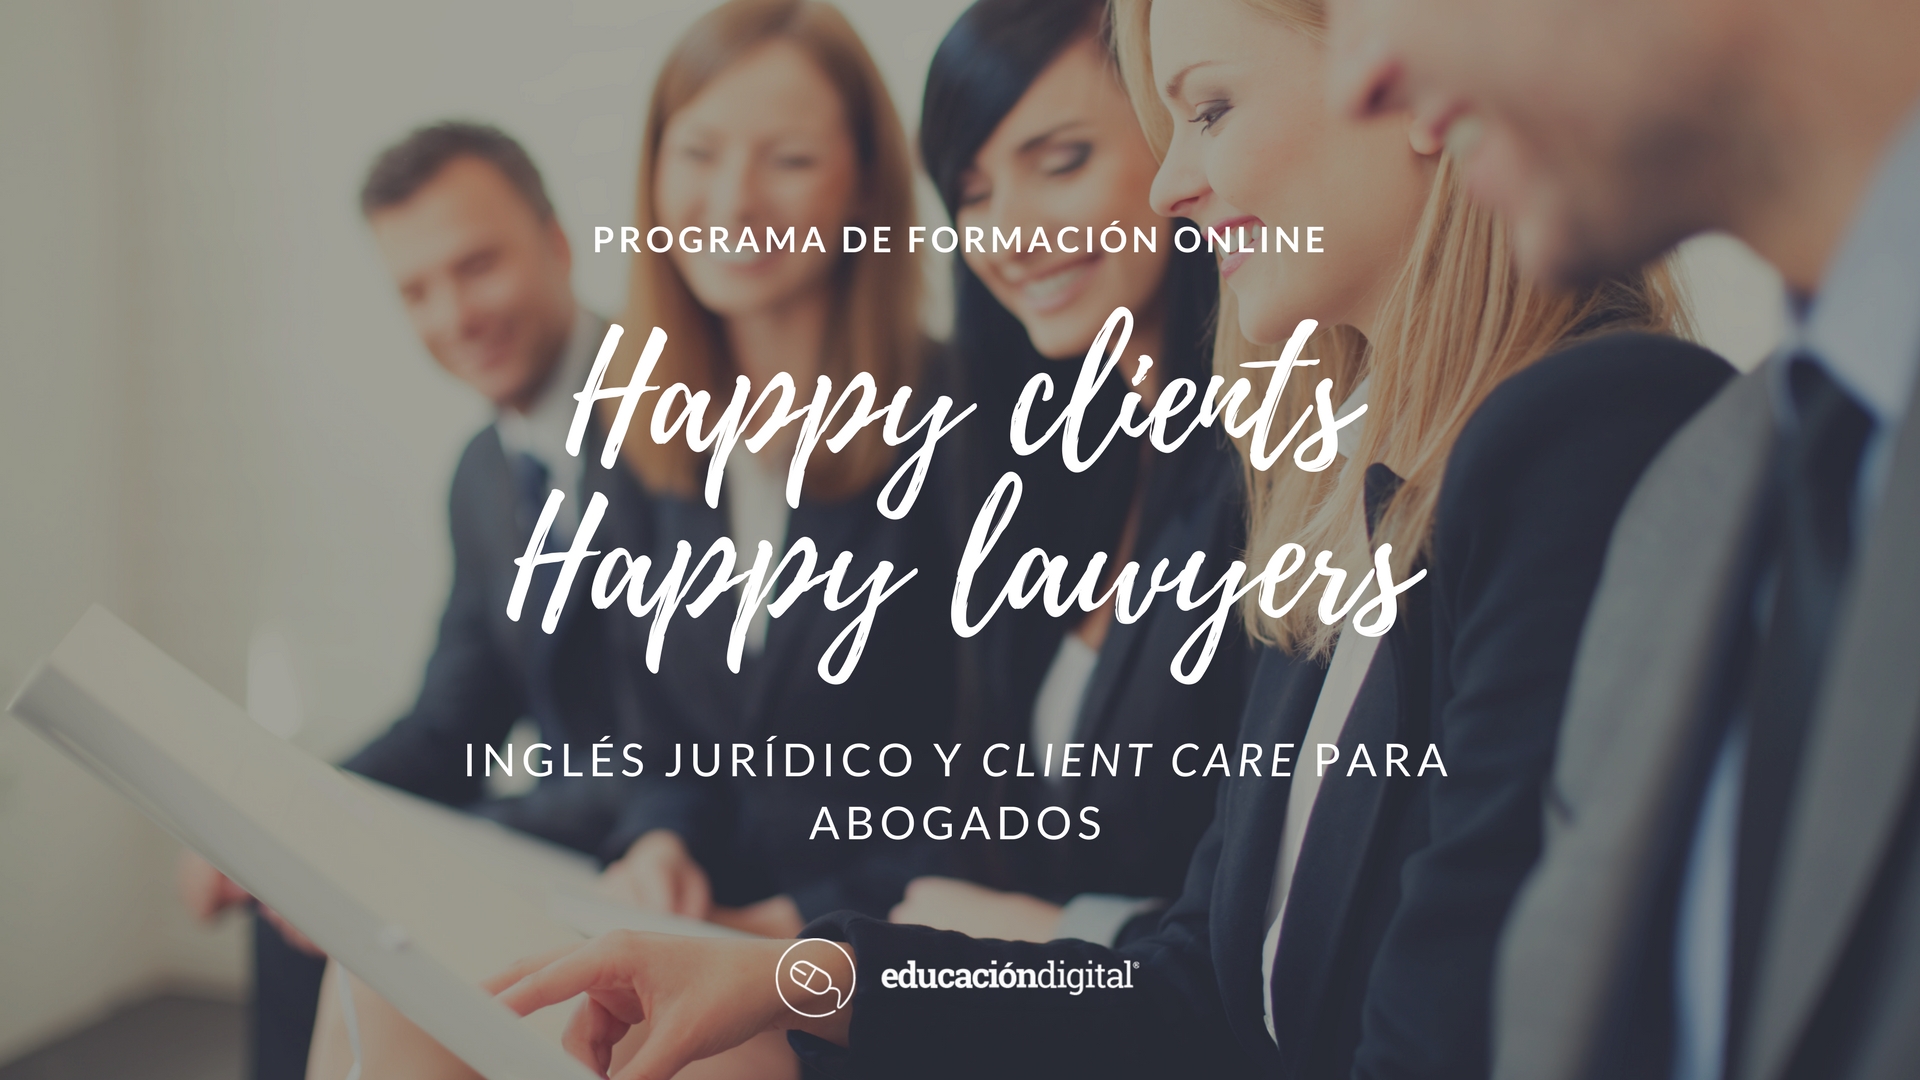 Happy clients Happy lawyers: Inglés jurídico y client care para abogados